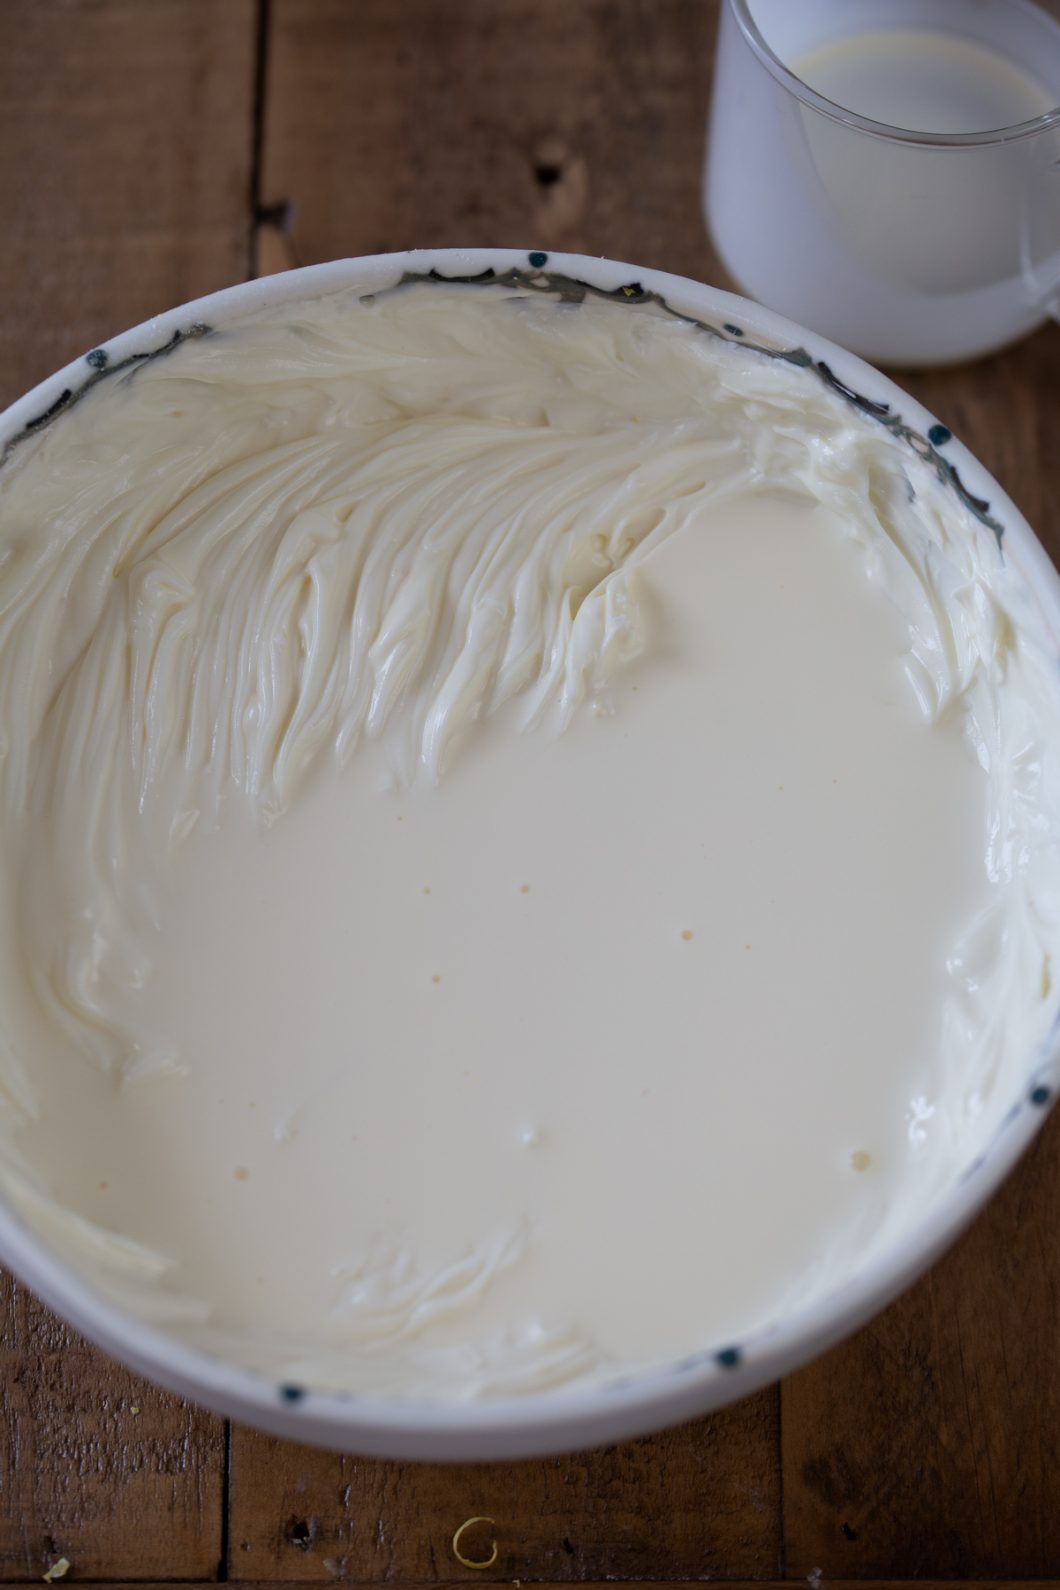 Adding cream to whipped cream cheese.